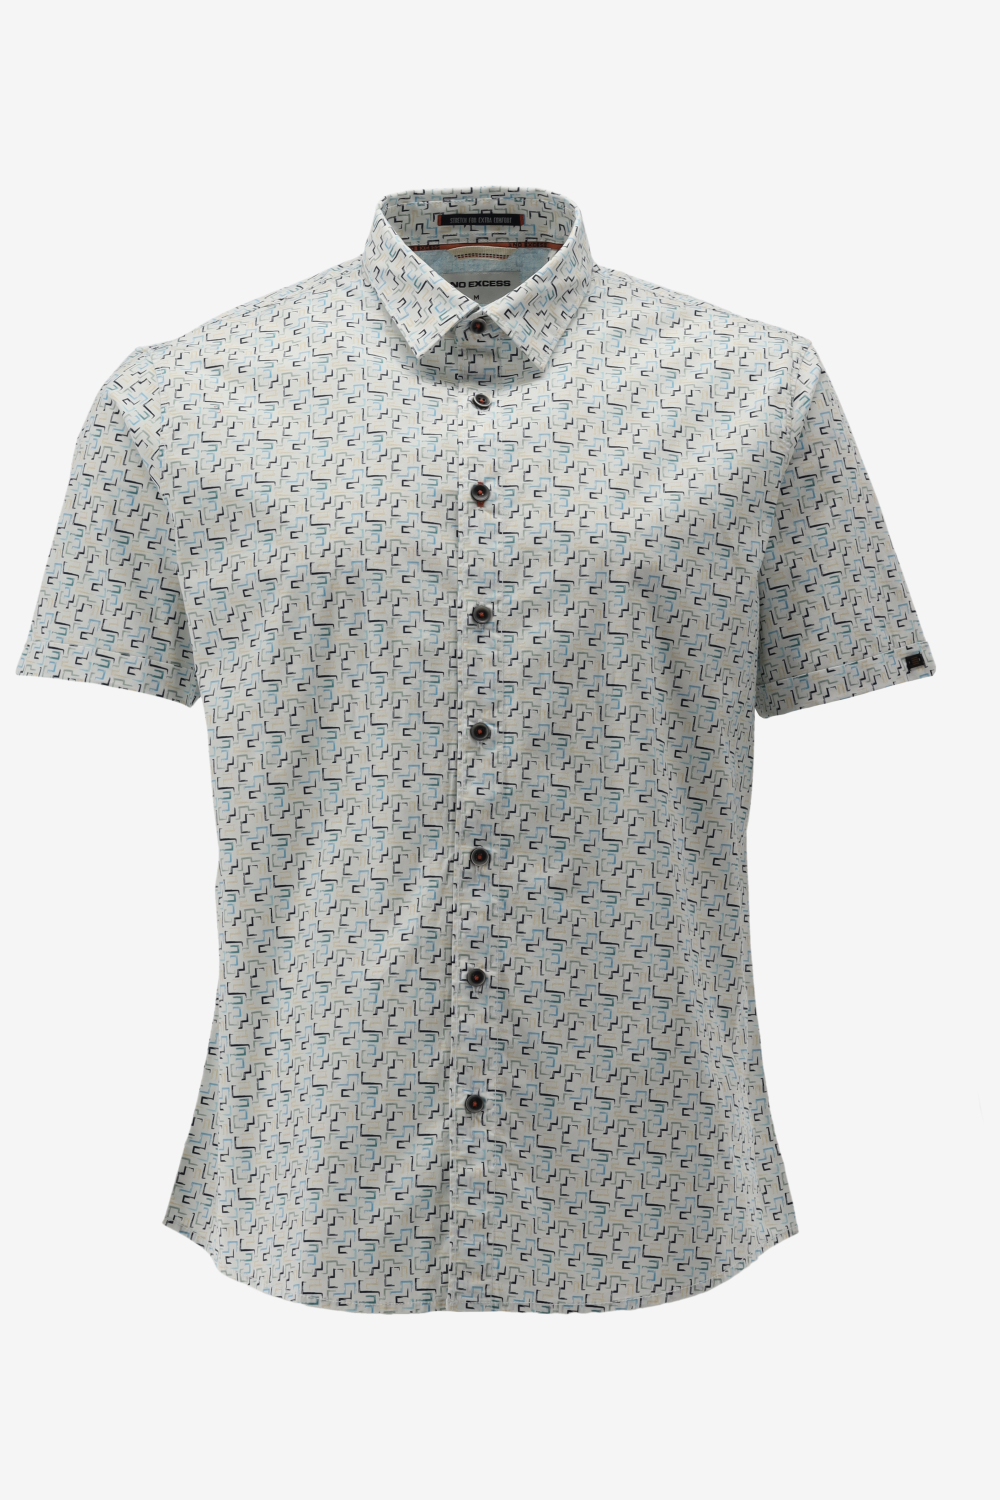 NO-EXCESS Overhemd Shirt Short Sleeve Stretch Allover Printed 23440243 036 Aqua Mannen Maat - XXL